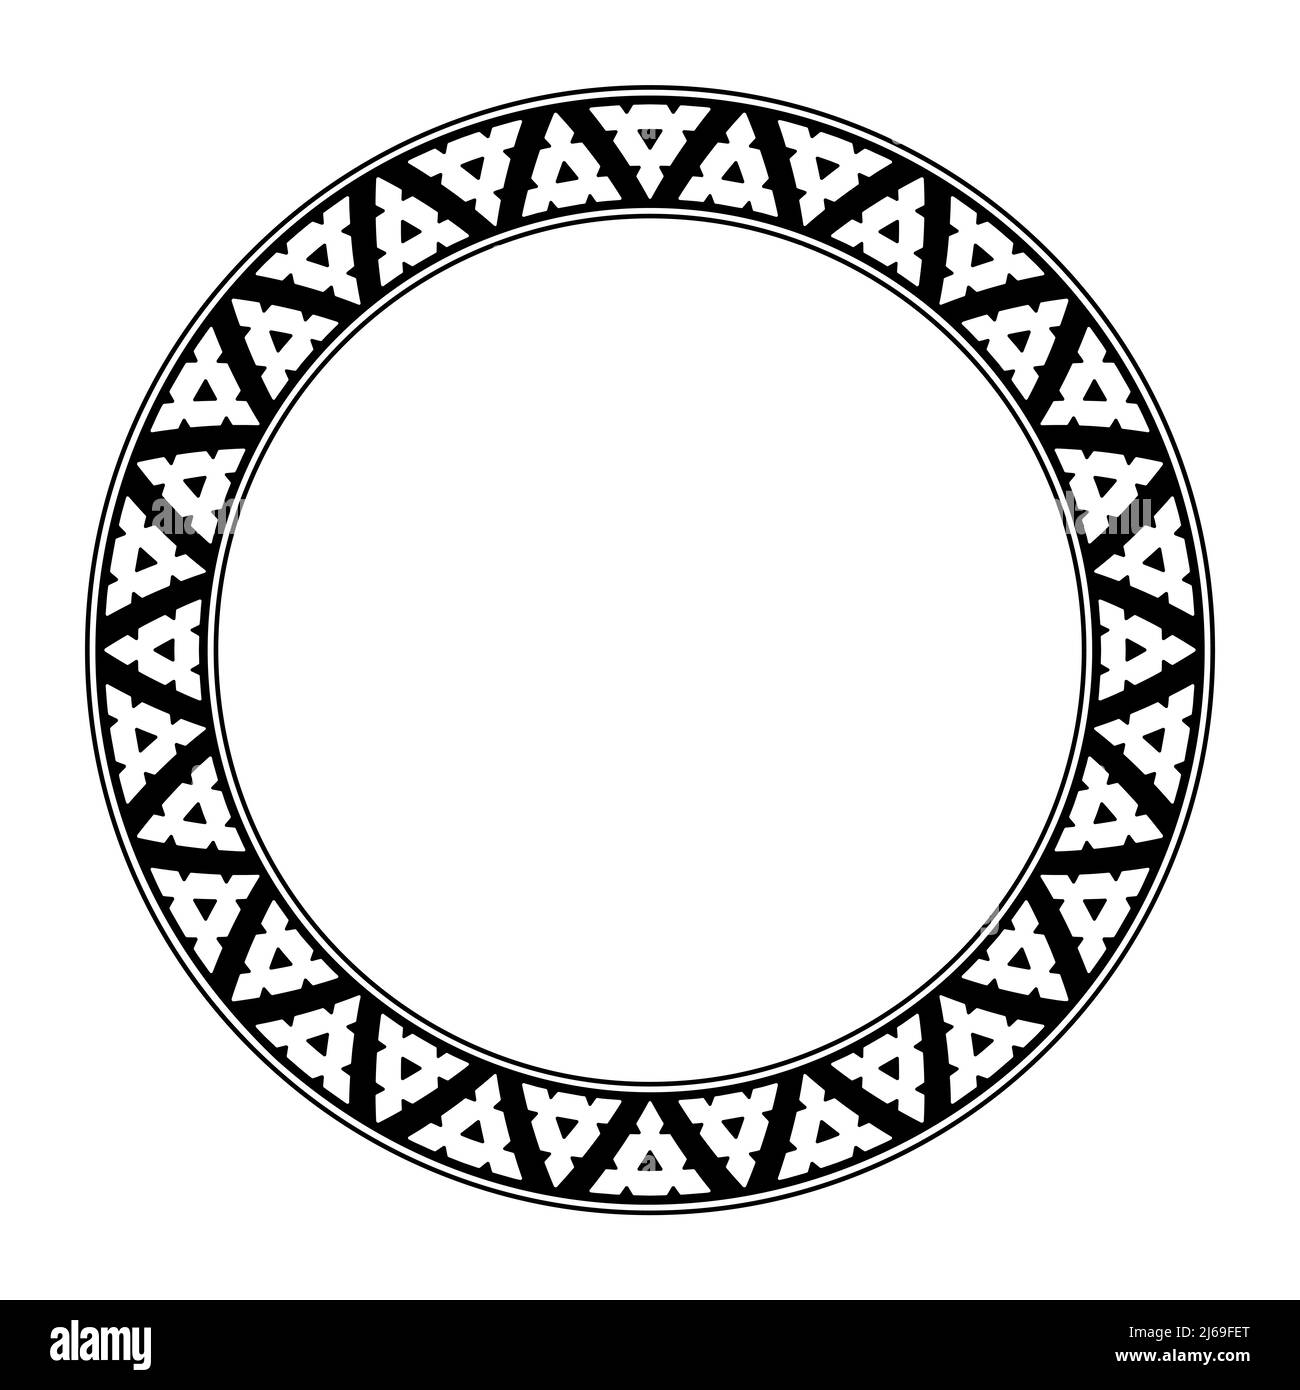 Motivo a triangolo seghettato, cornice circolare basata su tradizionali motivi intarsiati melanesiani. Triangoli bianchi, disposti alternati, con zone tagliate. Foto Stock